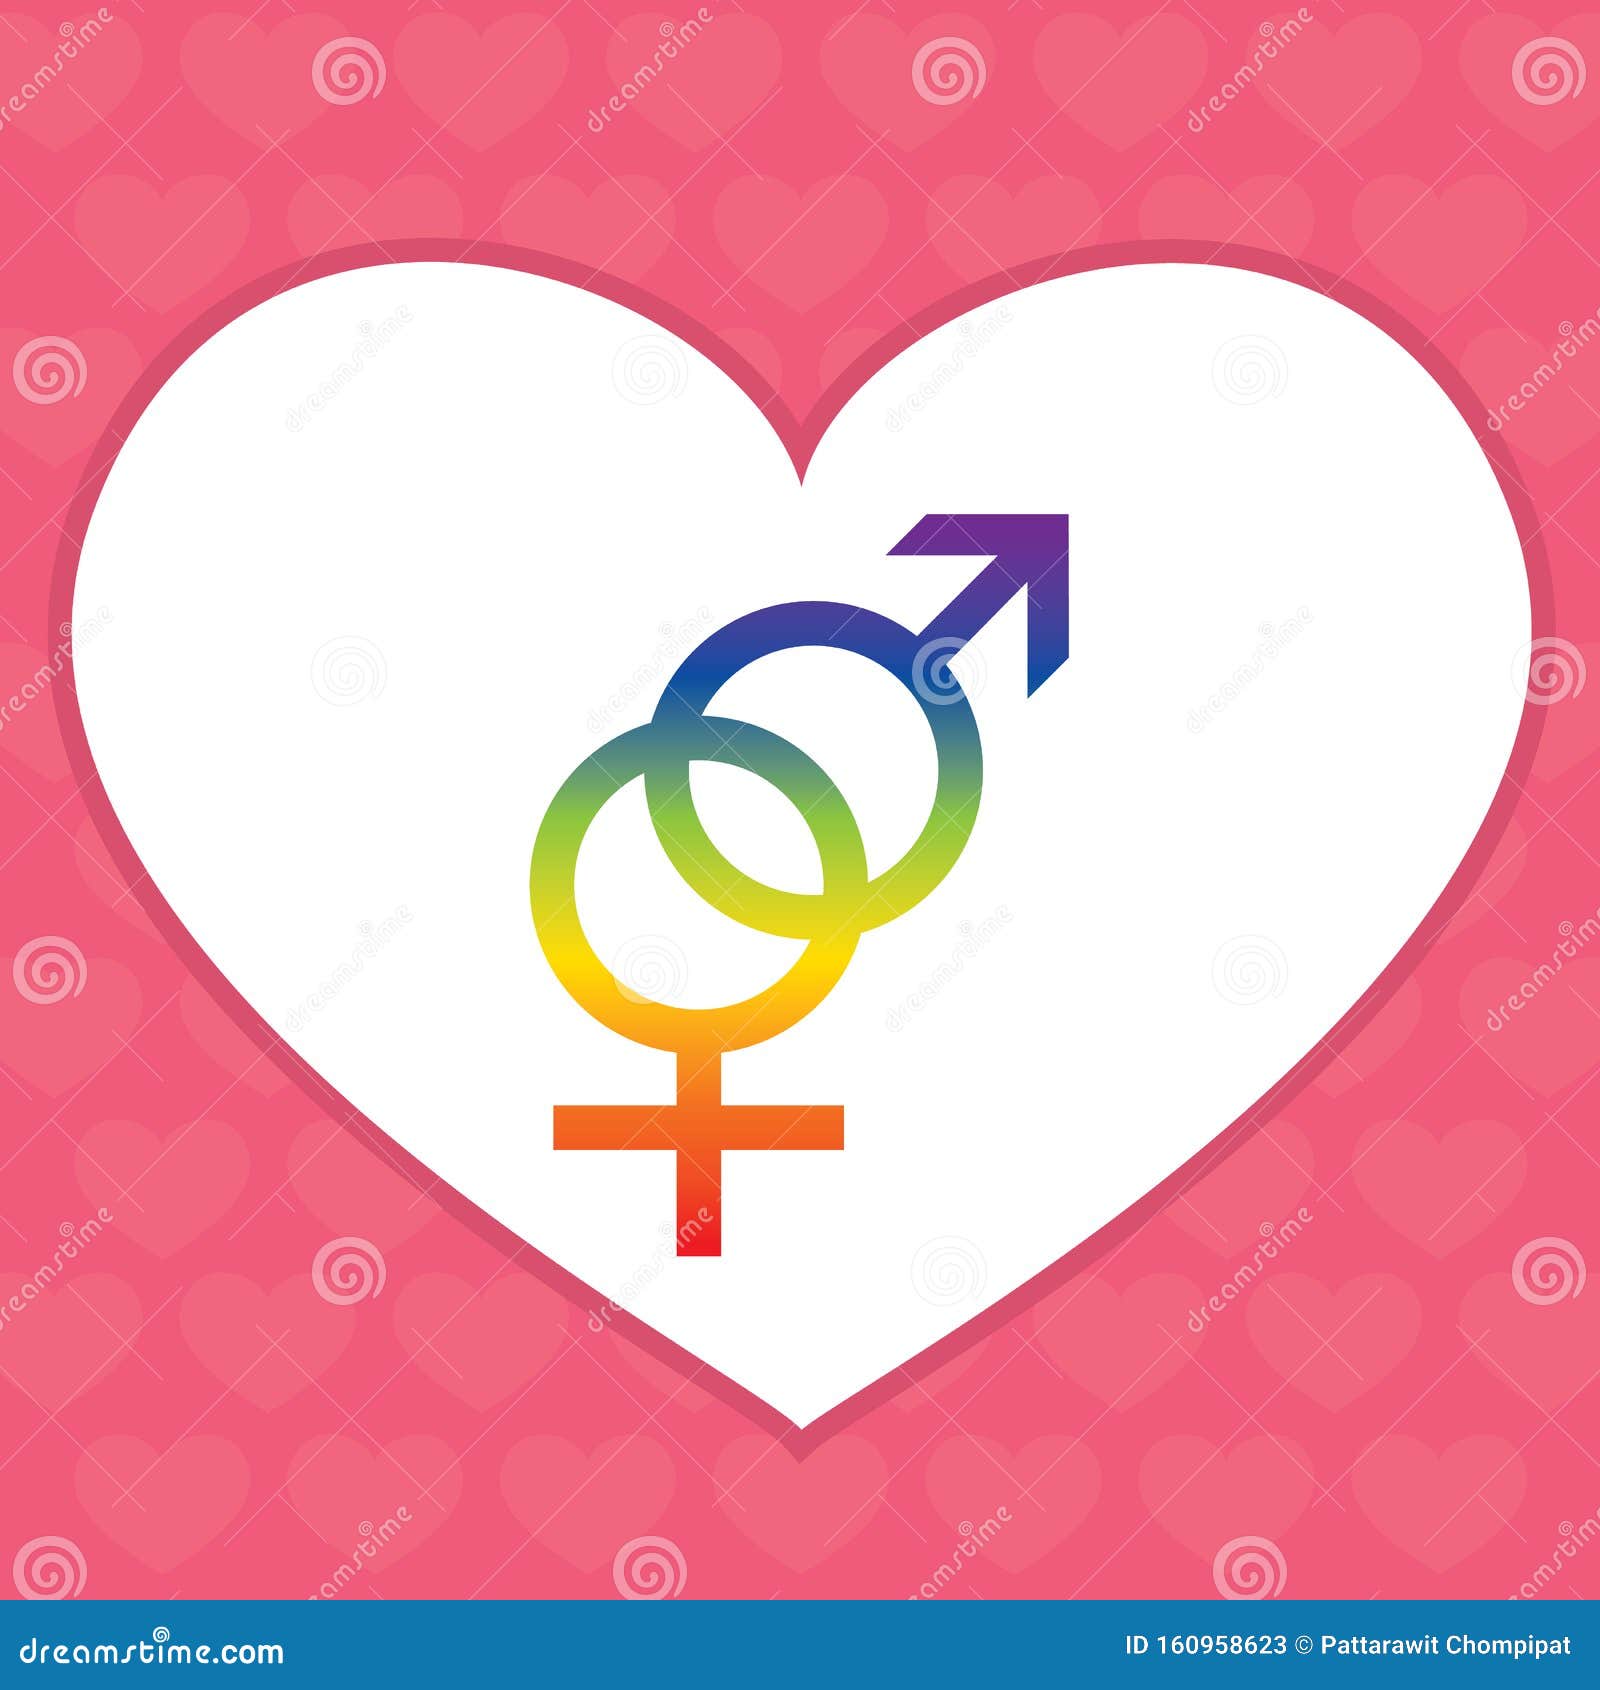 gender s bisexual heart.  .